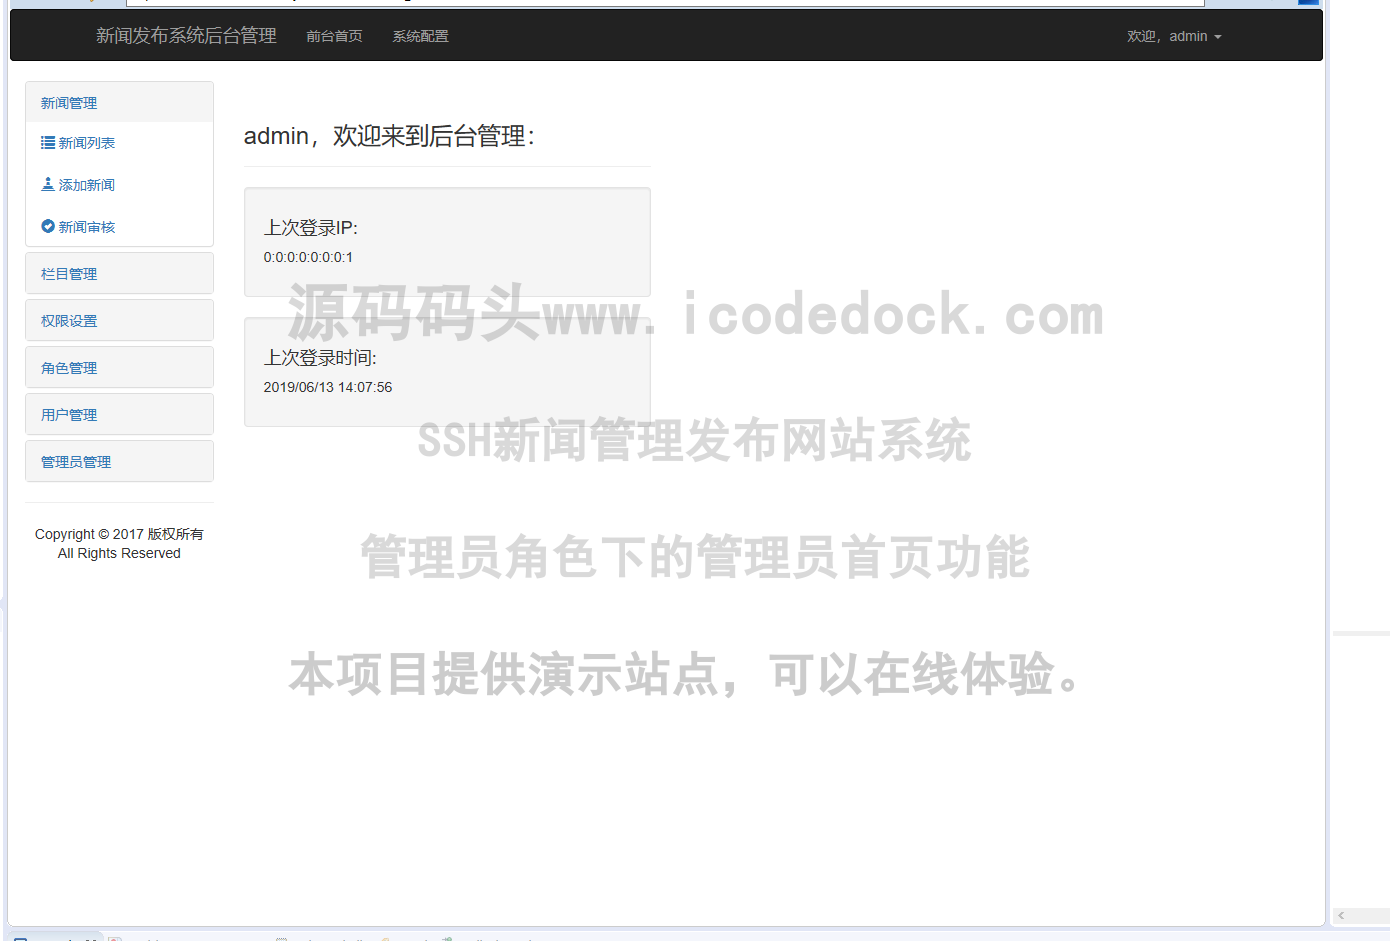 源码码头-SSH新闻管理发布网站系统-管理员角色-管理员首页